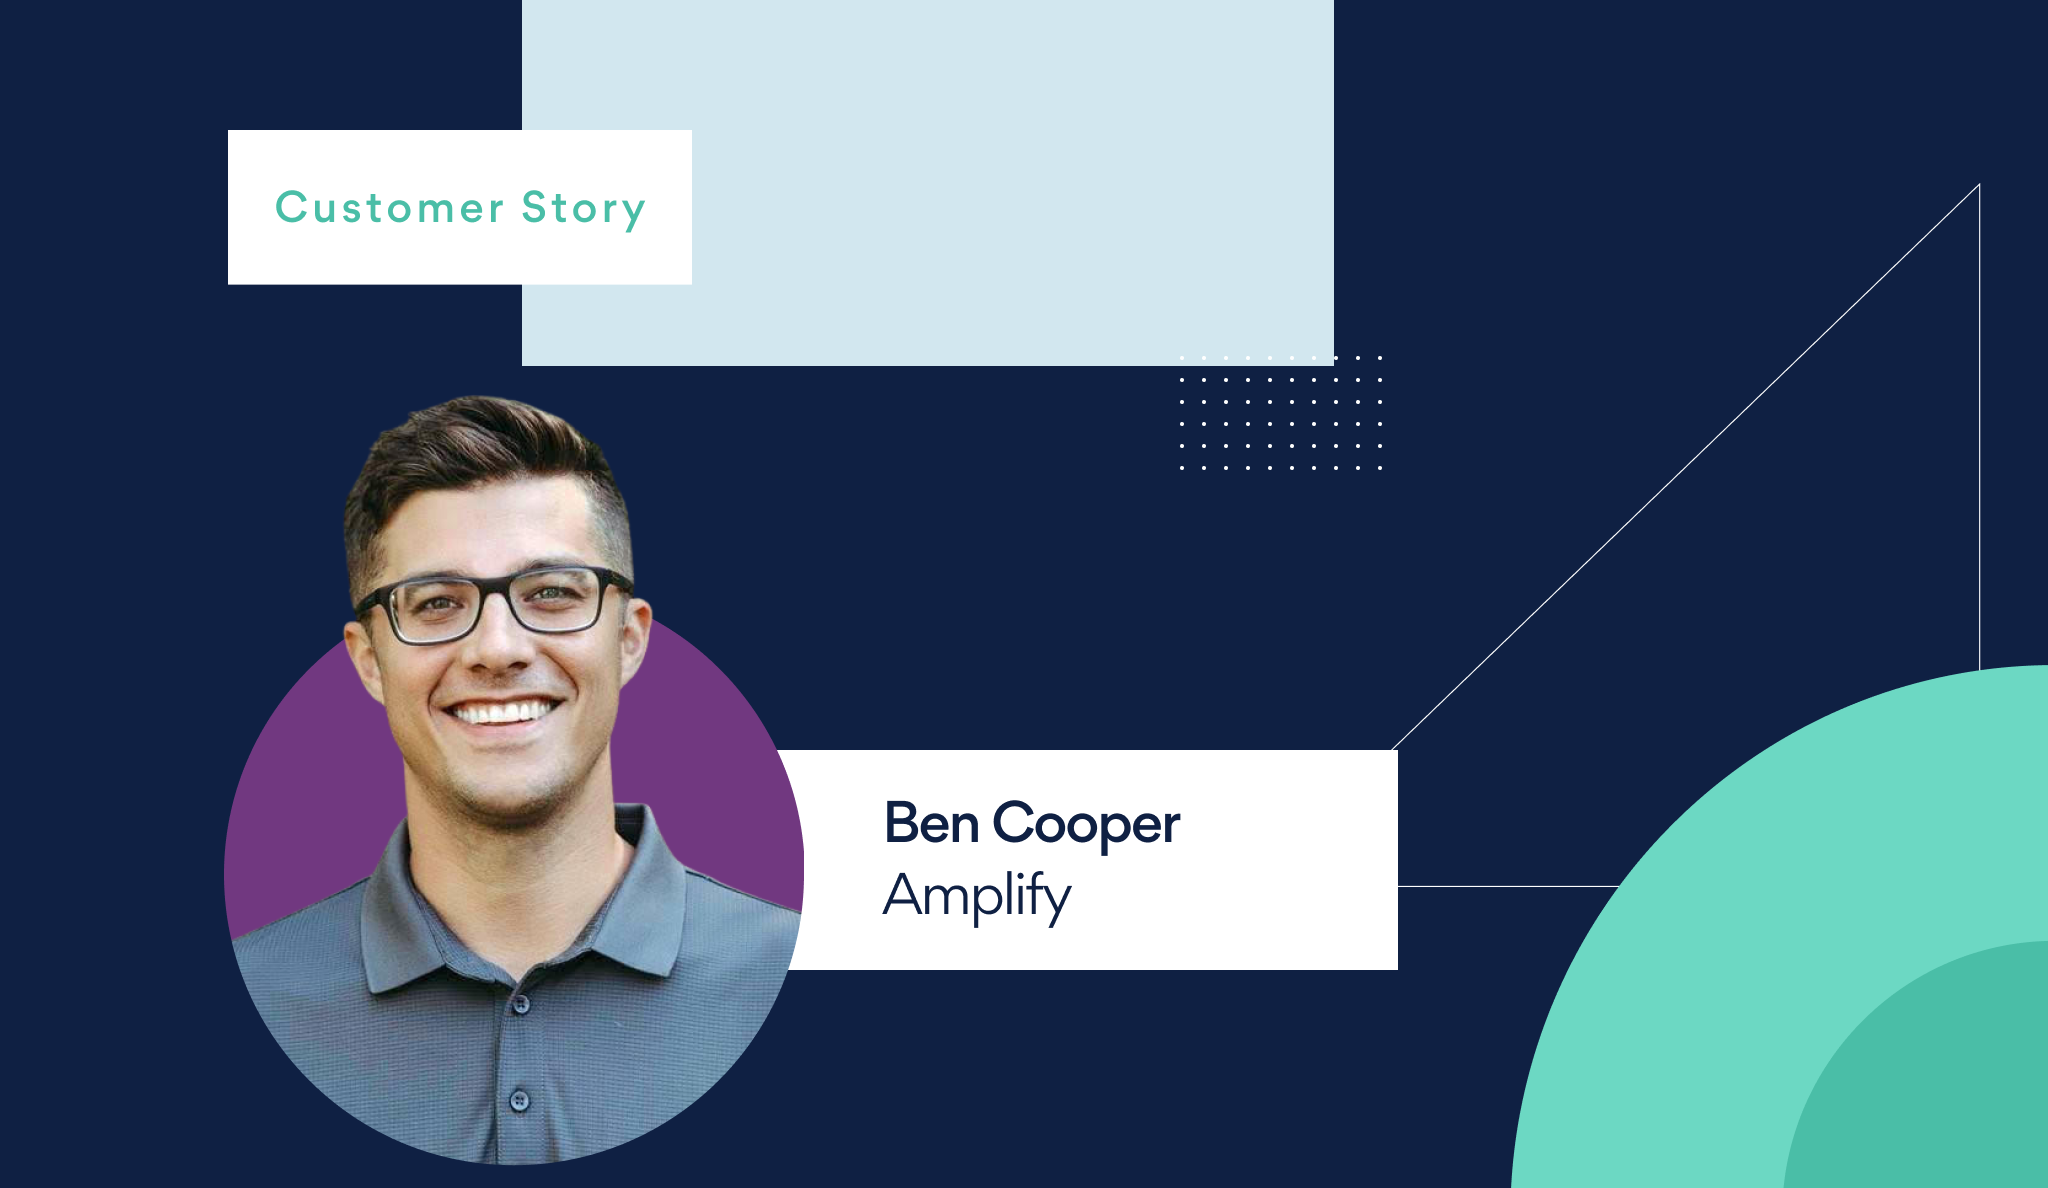 Ben Cooper, Amplify